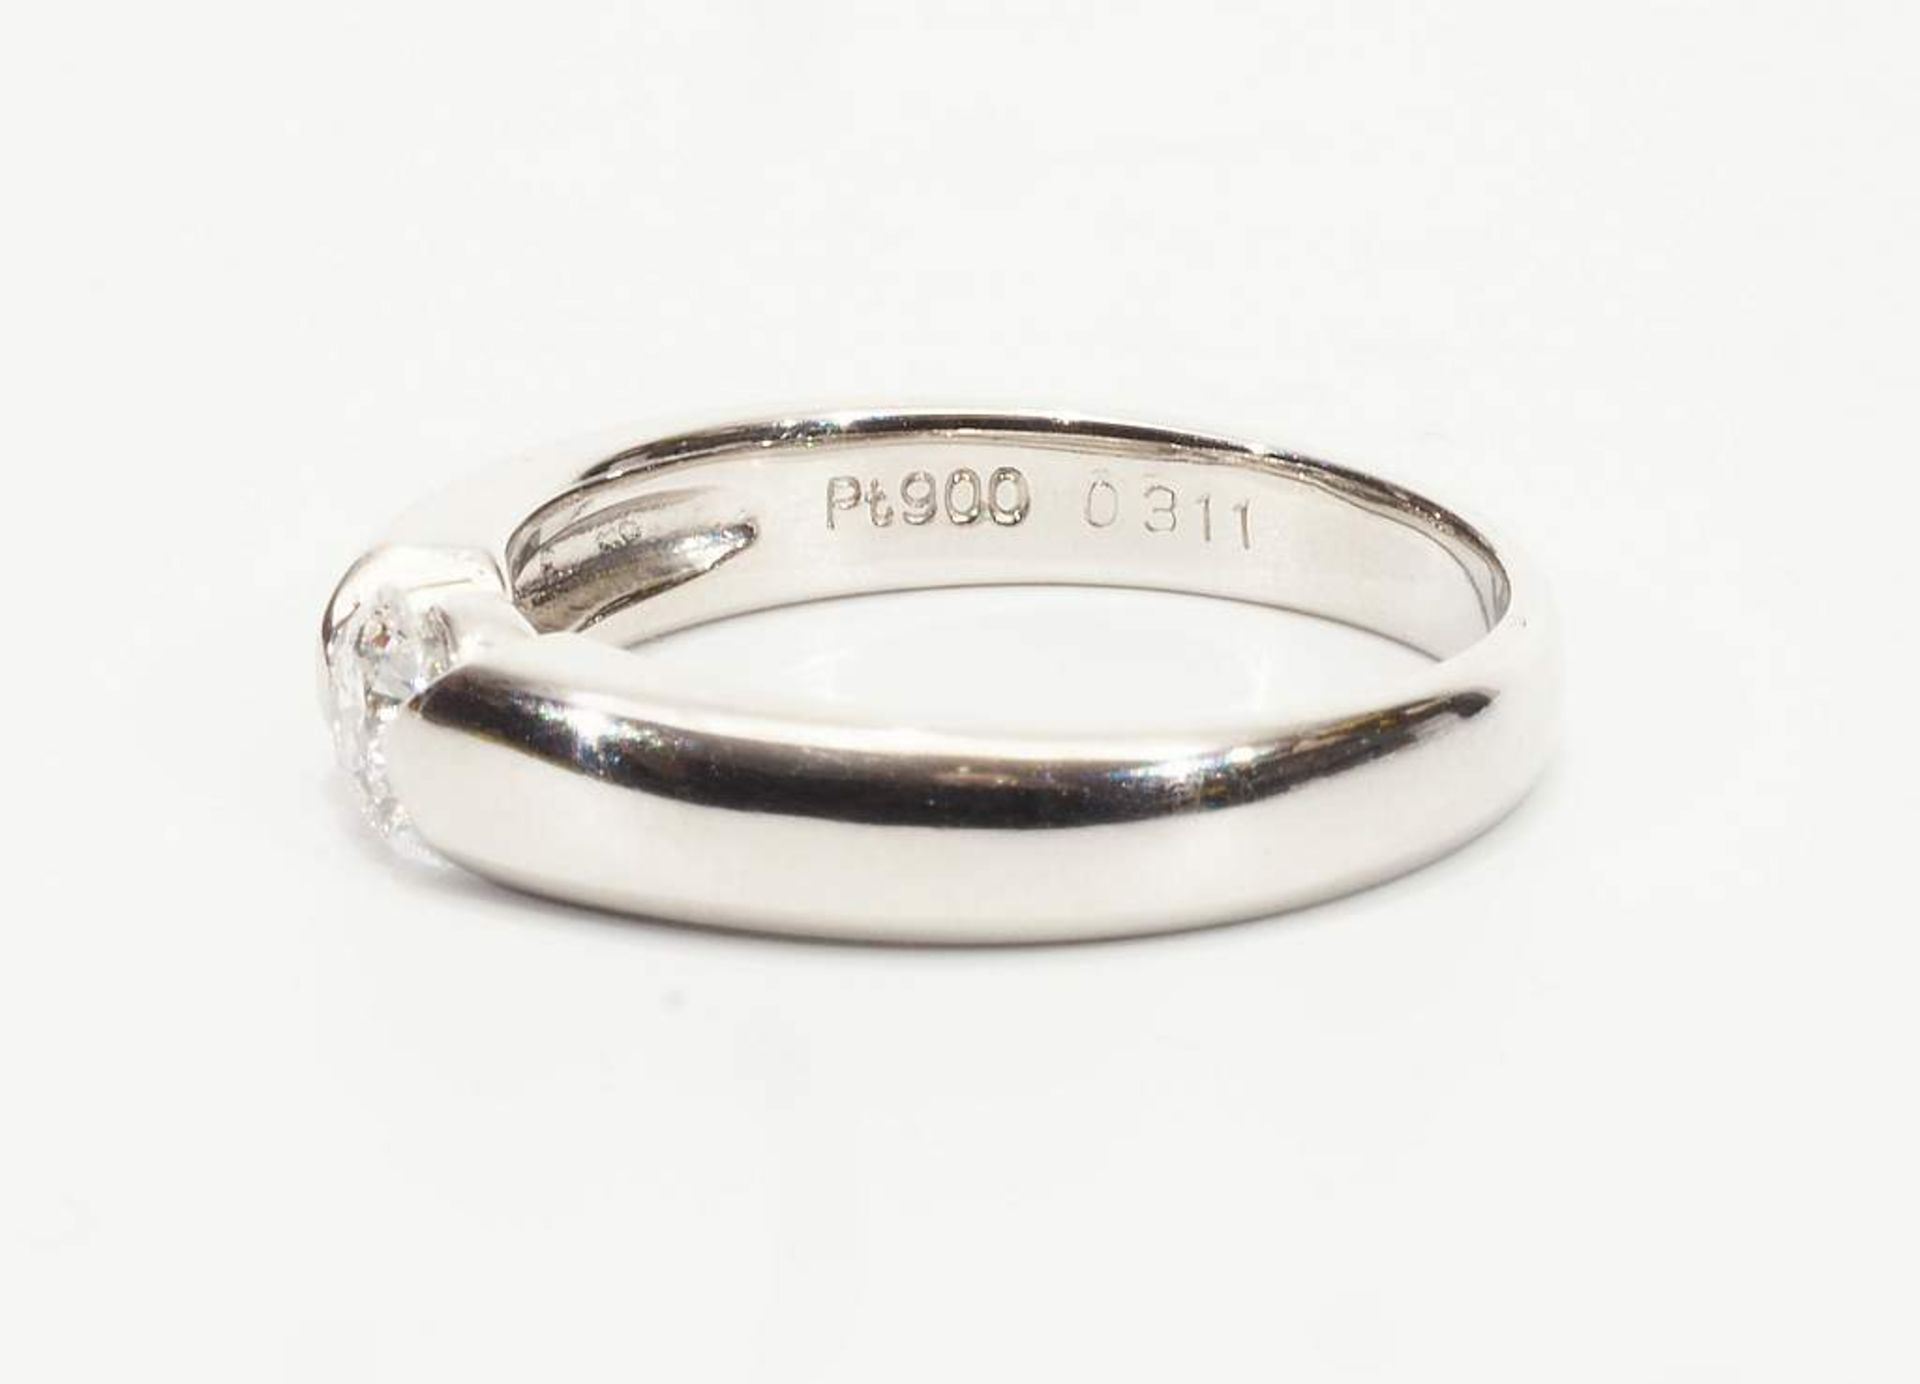 Ring, 900 Platin, besetzt mit 1 Brillant von 0,31 ct. (in der Ringschiene punziert). Ringgröße 52 - Bild 4 aus 6